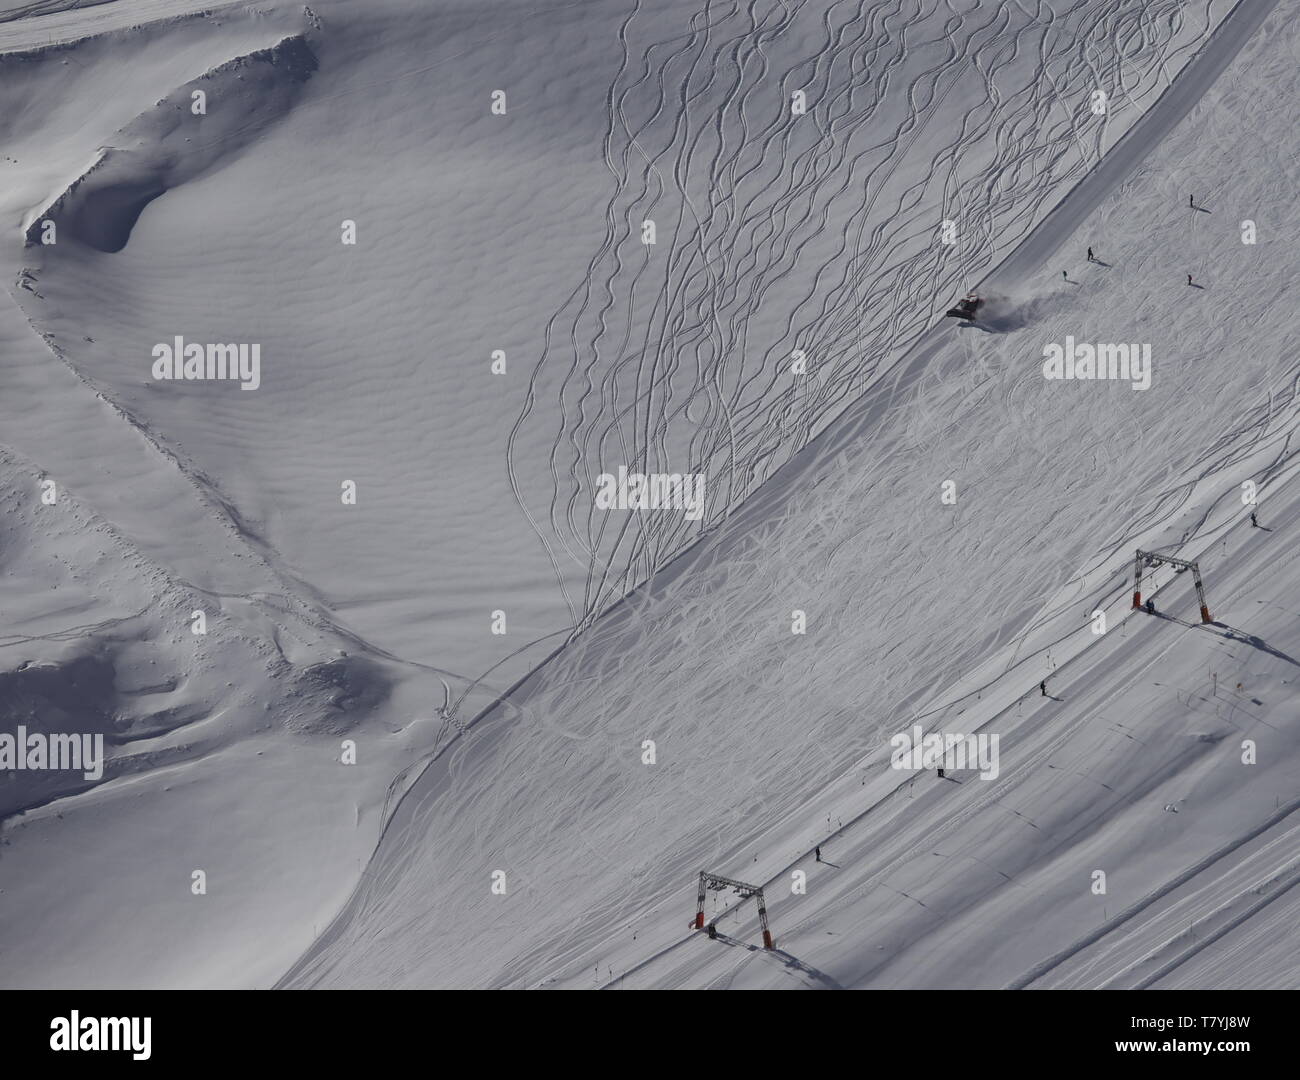 Neben der Sesselbahn haben die ersten Ski-Fahrer deutliche Spuren in den frischen Schnee gefahren. Foto Stock